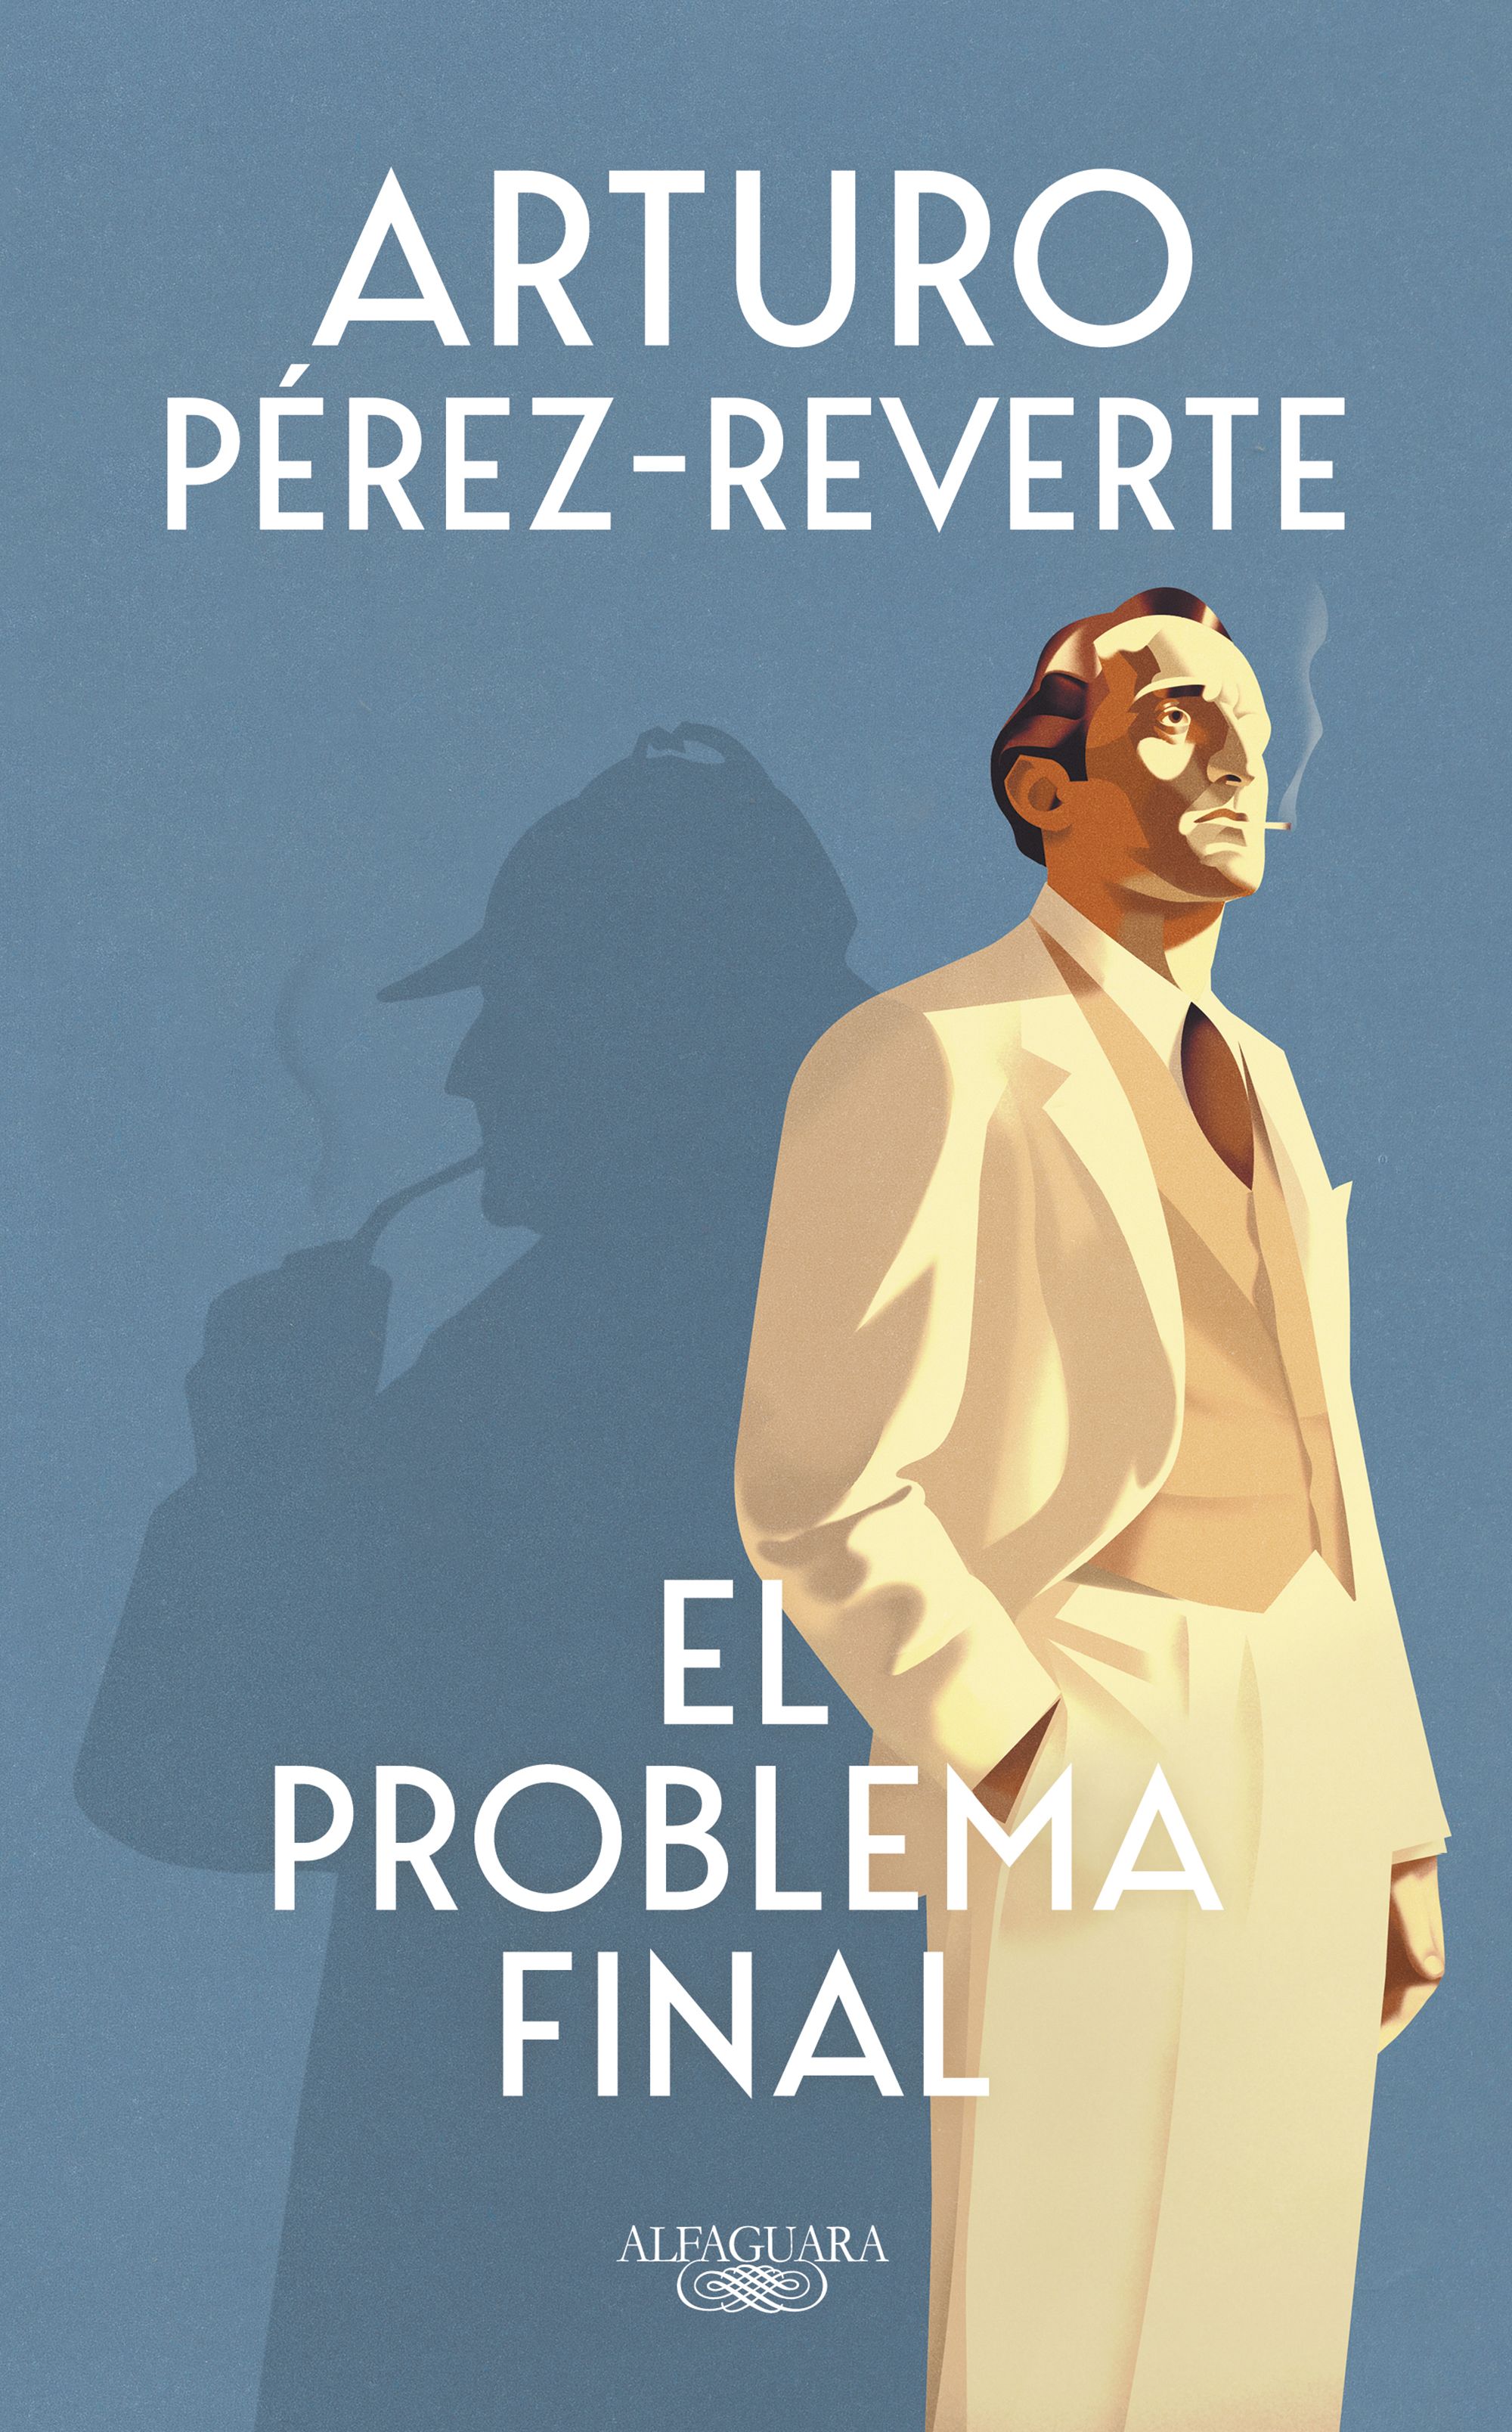 Arturo Pérez-Reverte - Todo Alatriste. Por primera vez en un solo volumen  las siete novelas que componen la serie de Las aventuras del capitán  Alatriste.